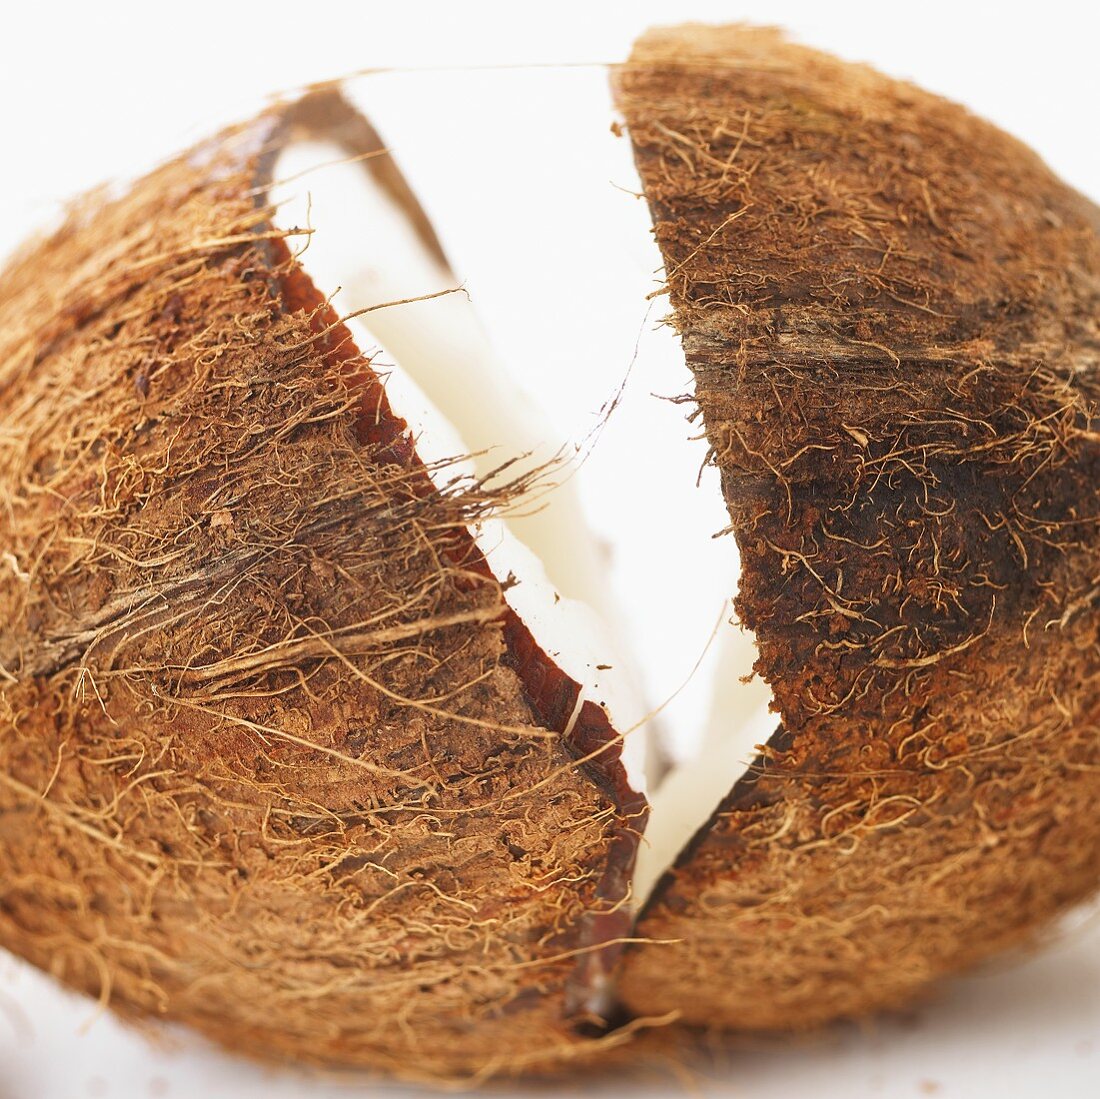 Broken coconut (close-up)